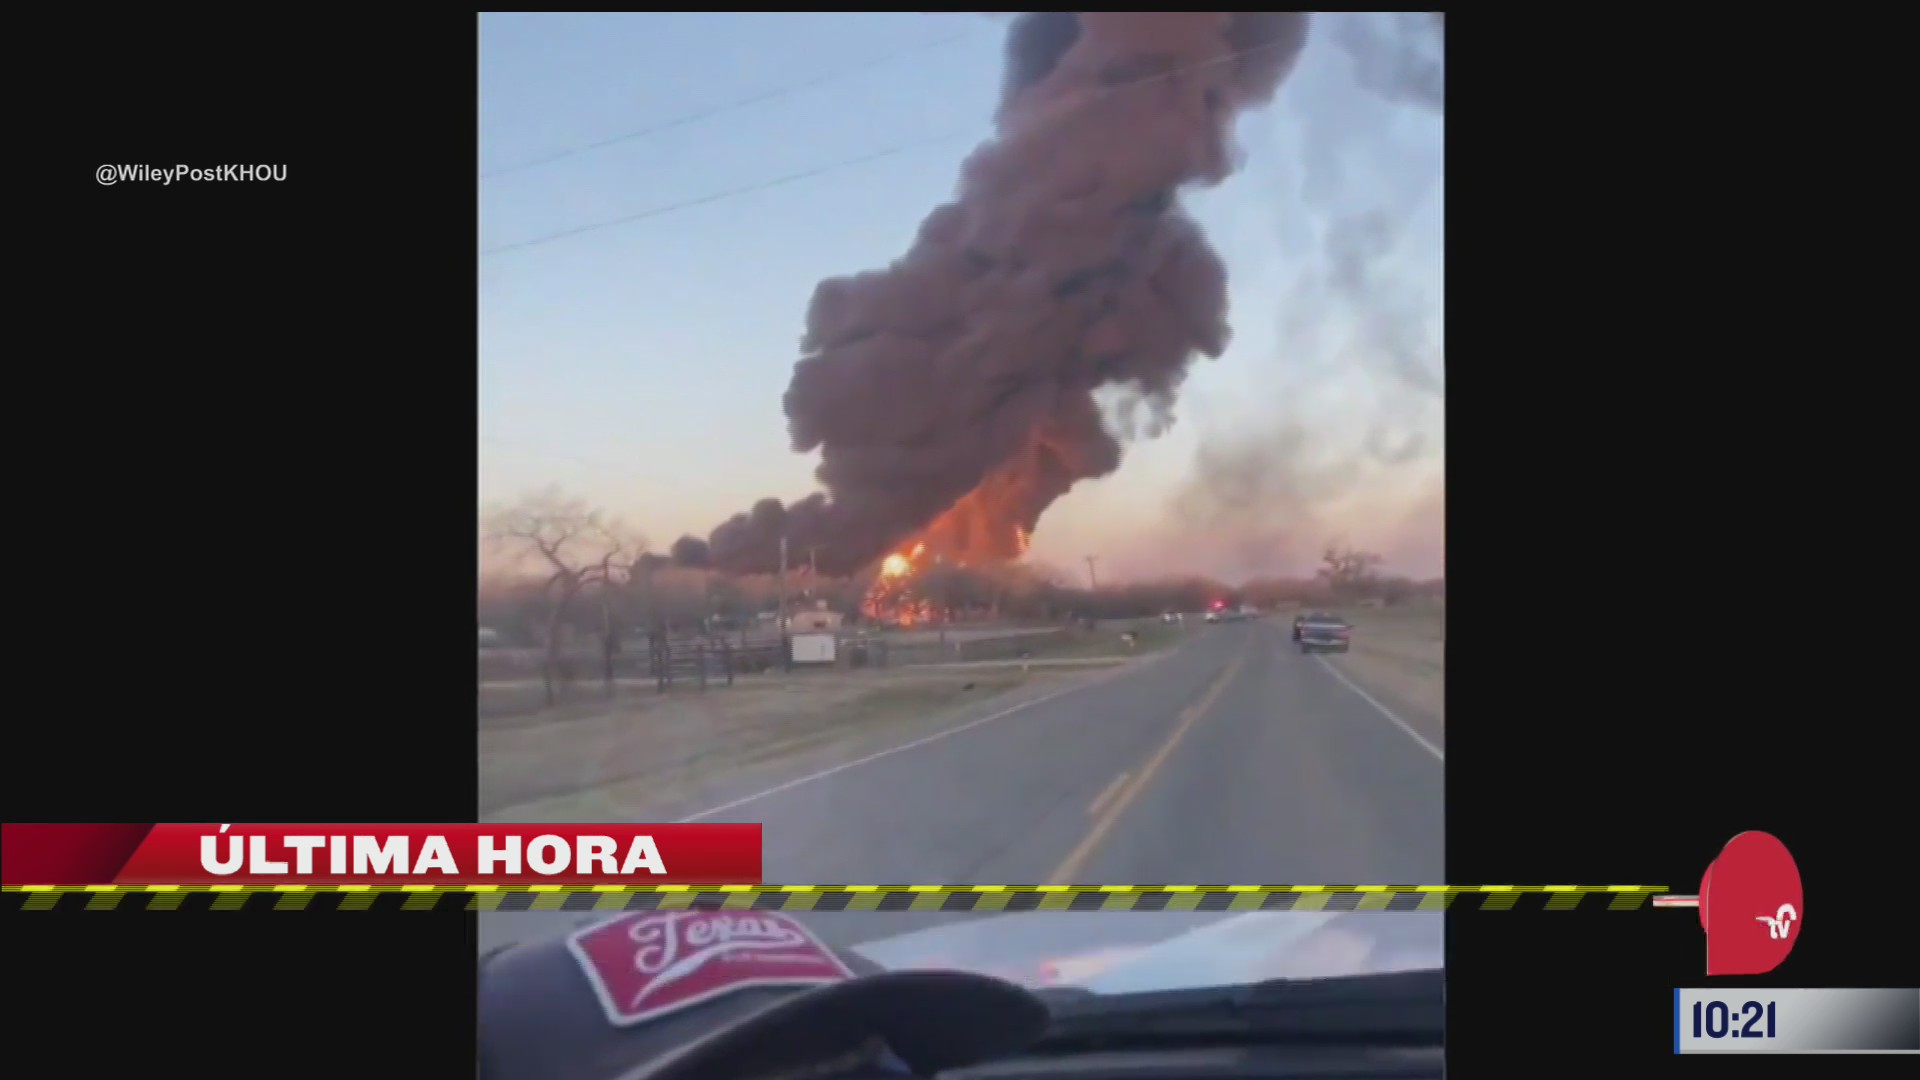 enorme explosion ocurre tras choque entre tren y un camion en texas